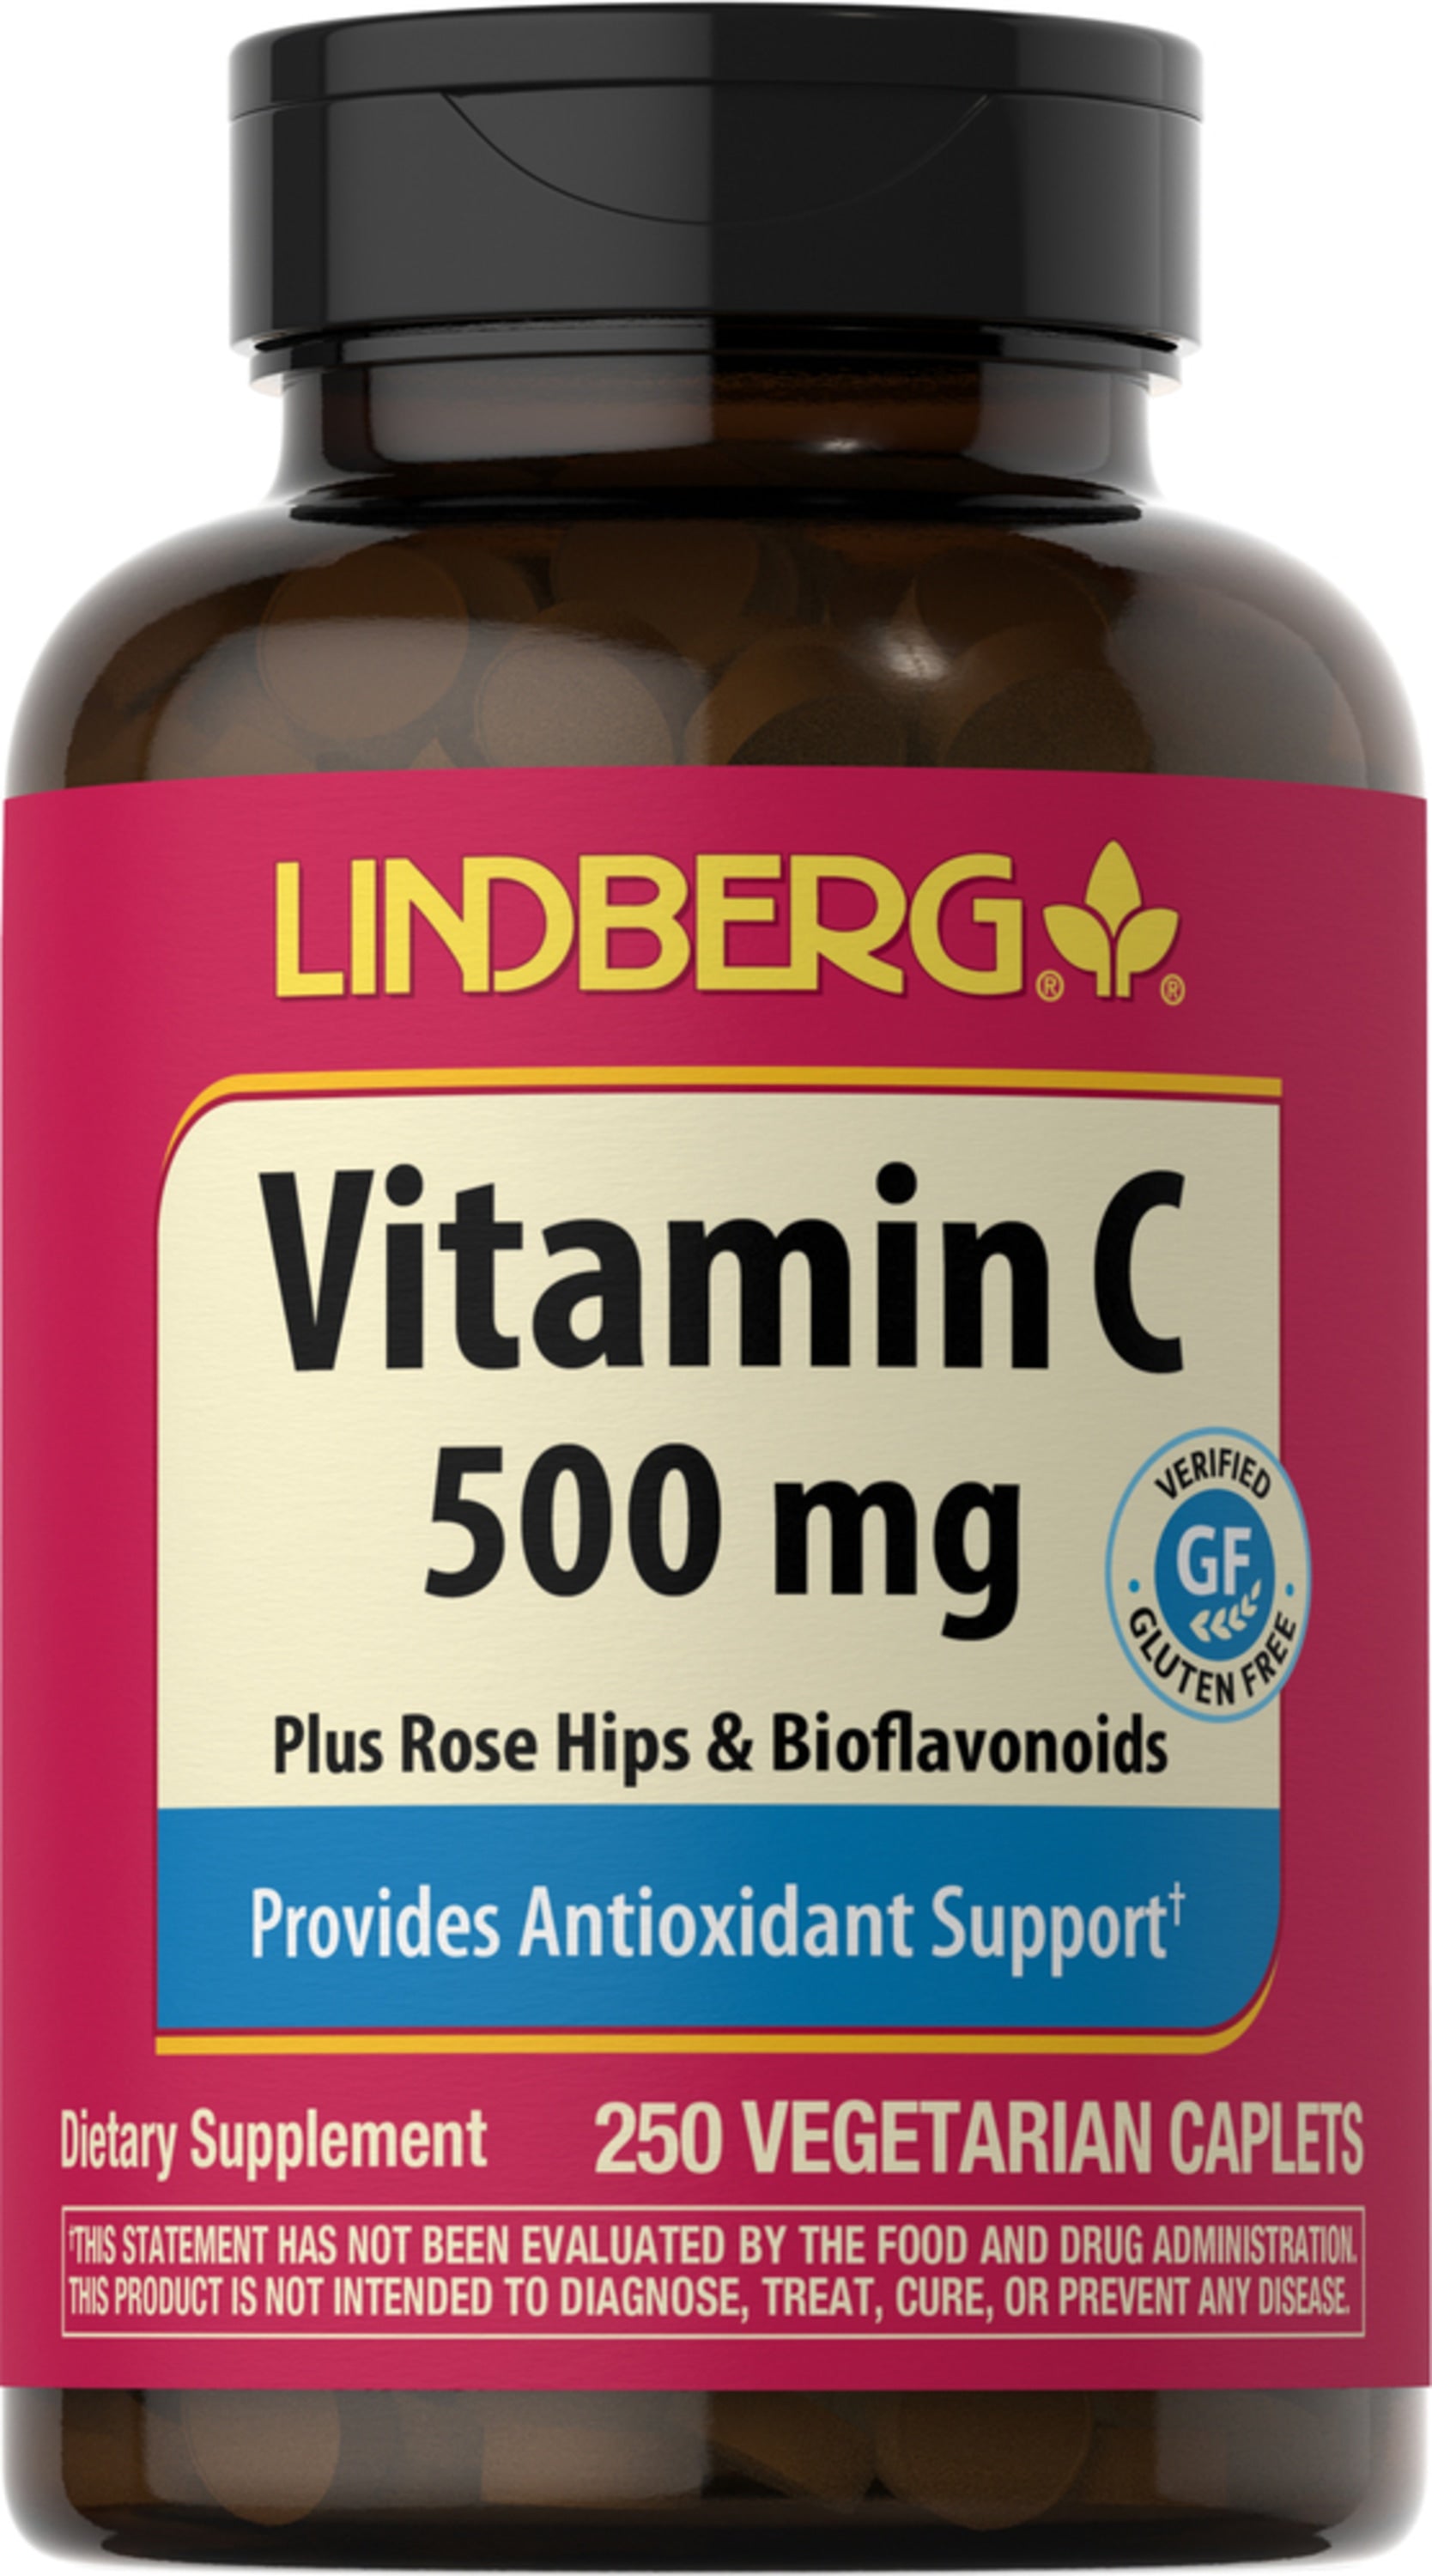 Vitamin C 500 mg plus Rose Hips & Bioflavonoids, 250 Vegetarian Caplets